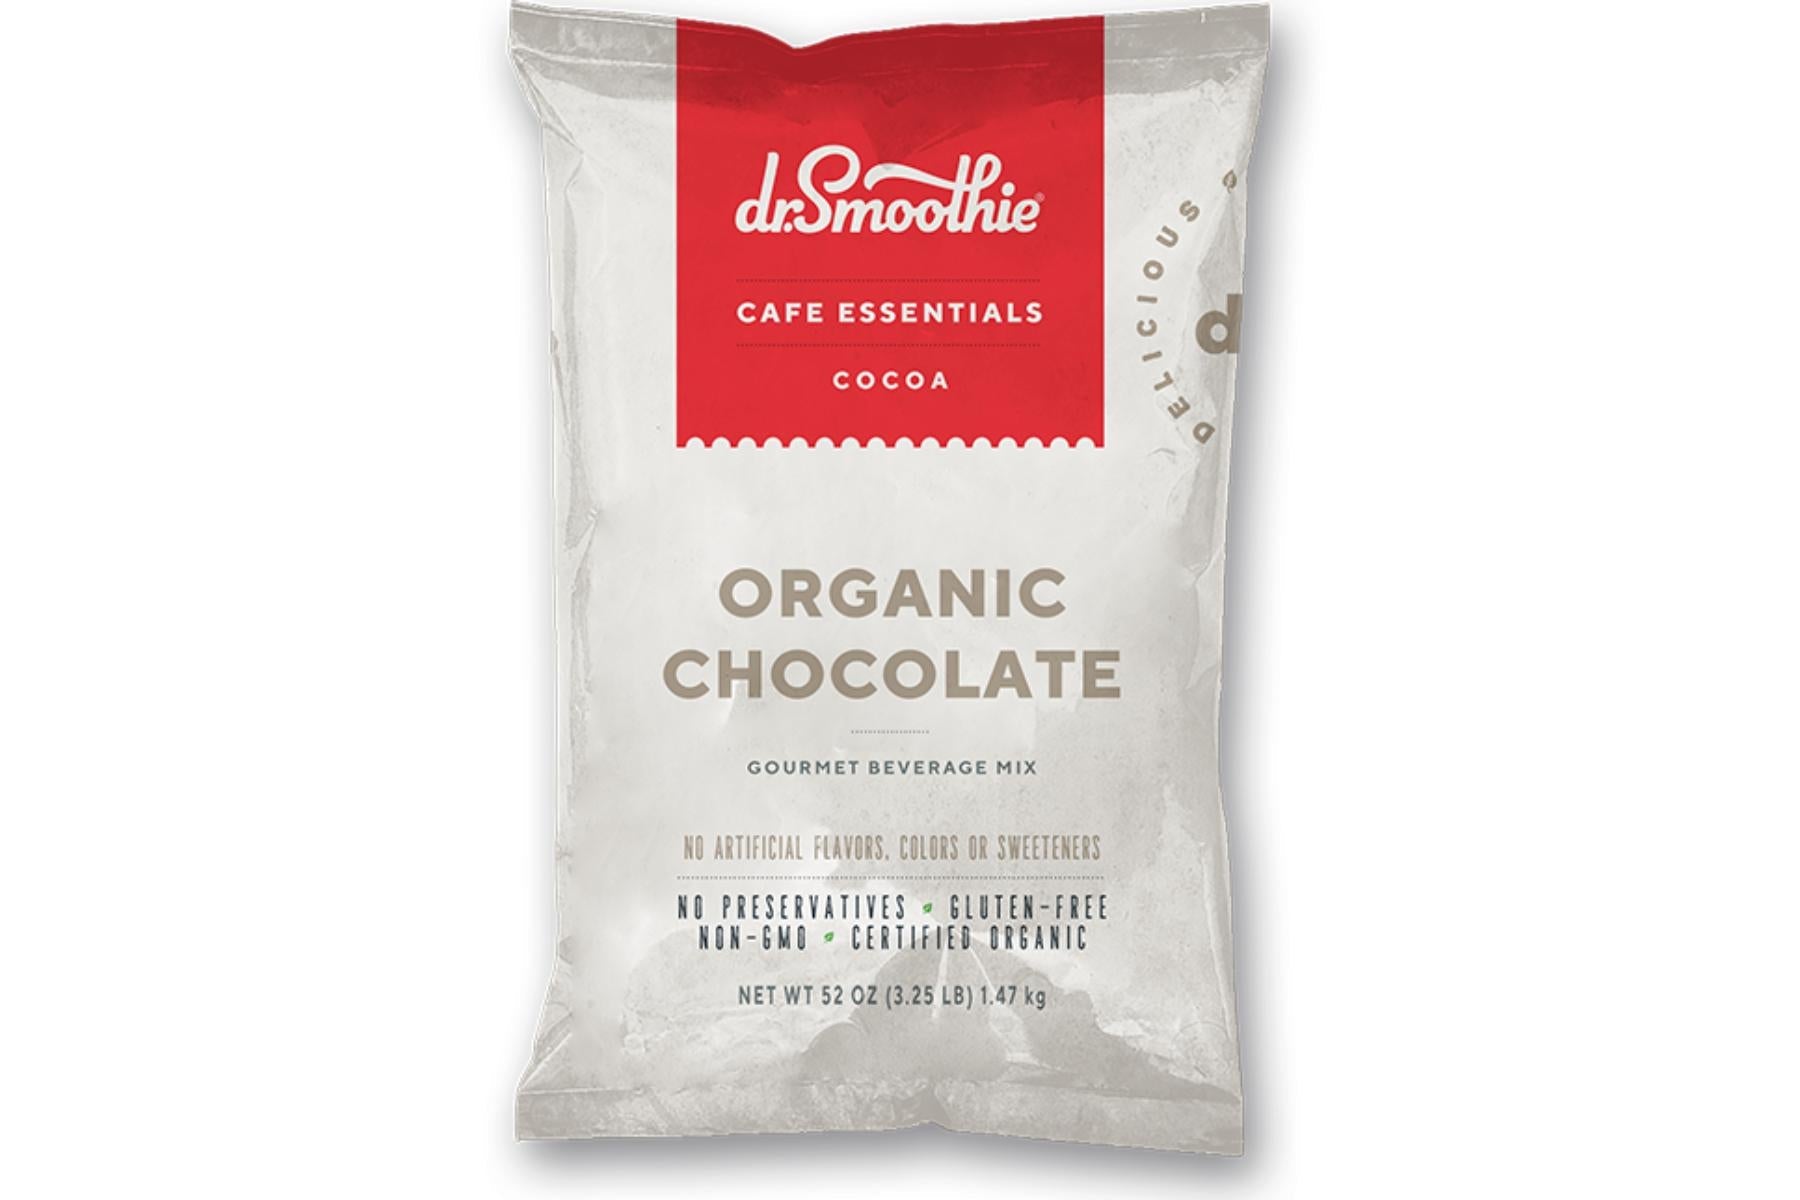 Dr. Smoothie Cafe Essentials Cocoa - 3.5lb Bulk Bag: Organic Chocolate